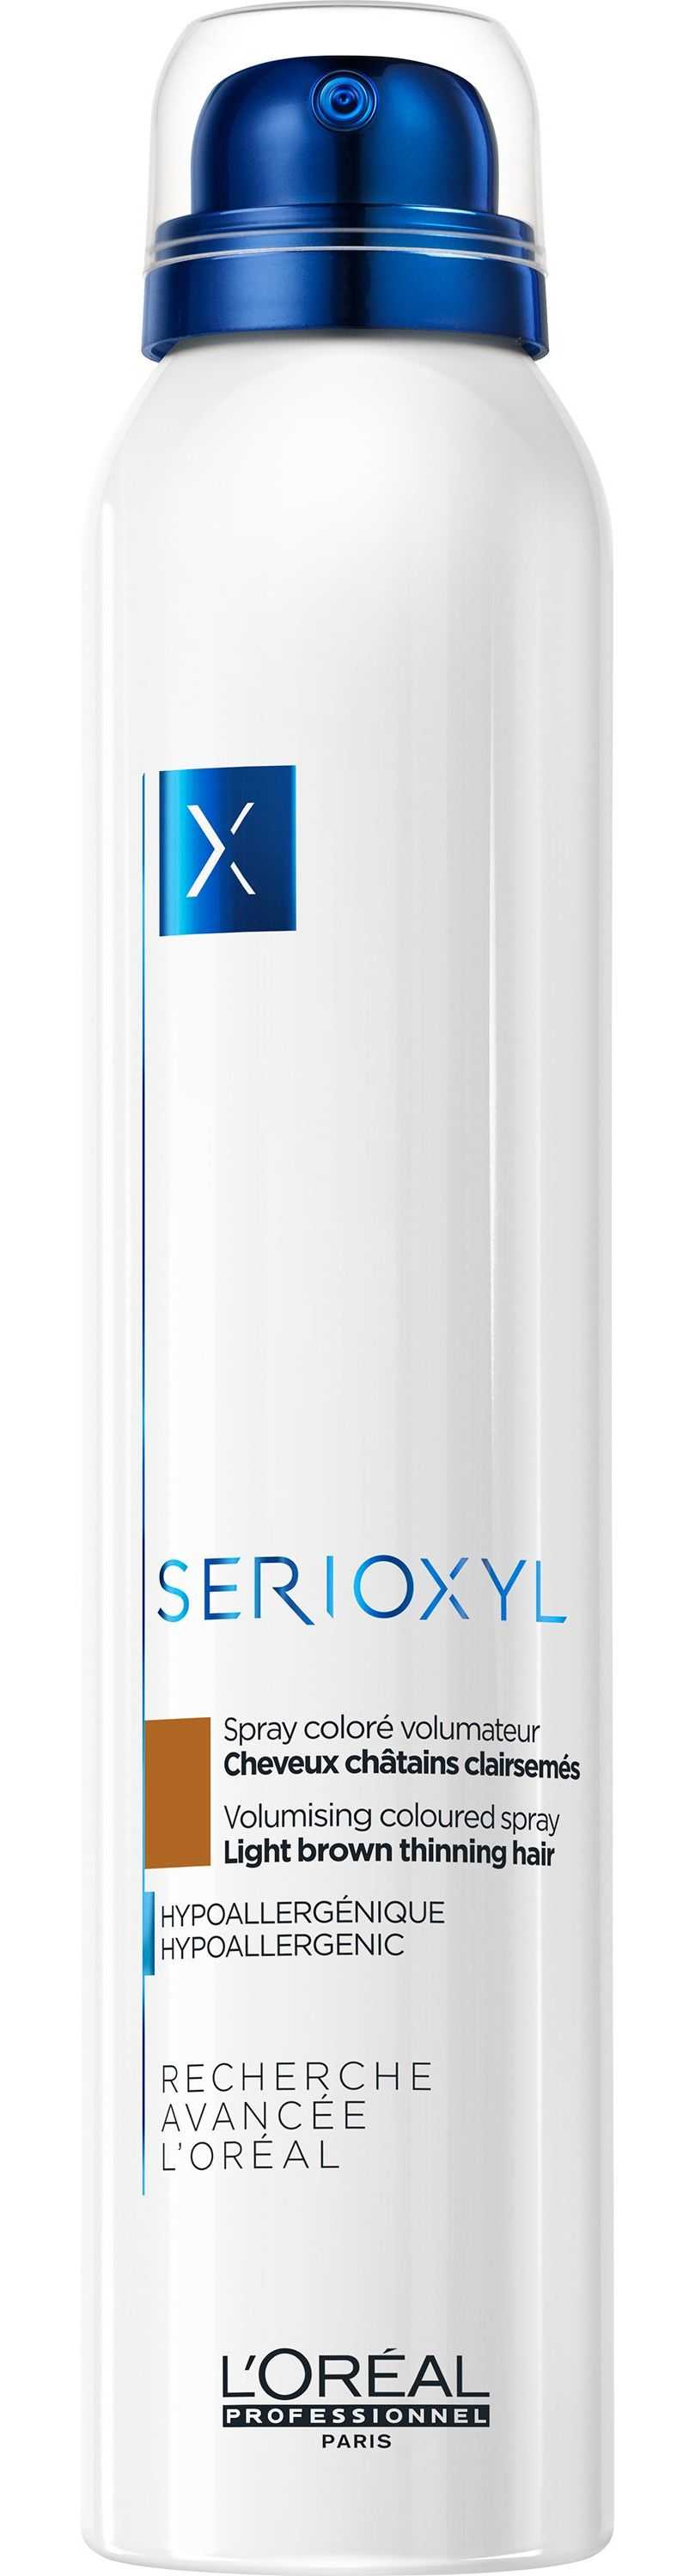 Шампунь Serioxyl от L'Oréal Professionnel: обзор и как применять